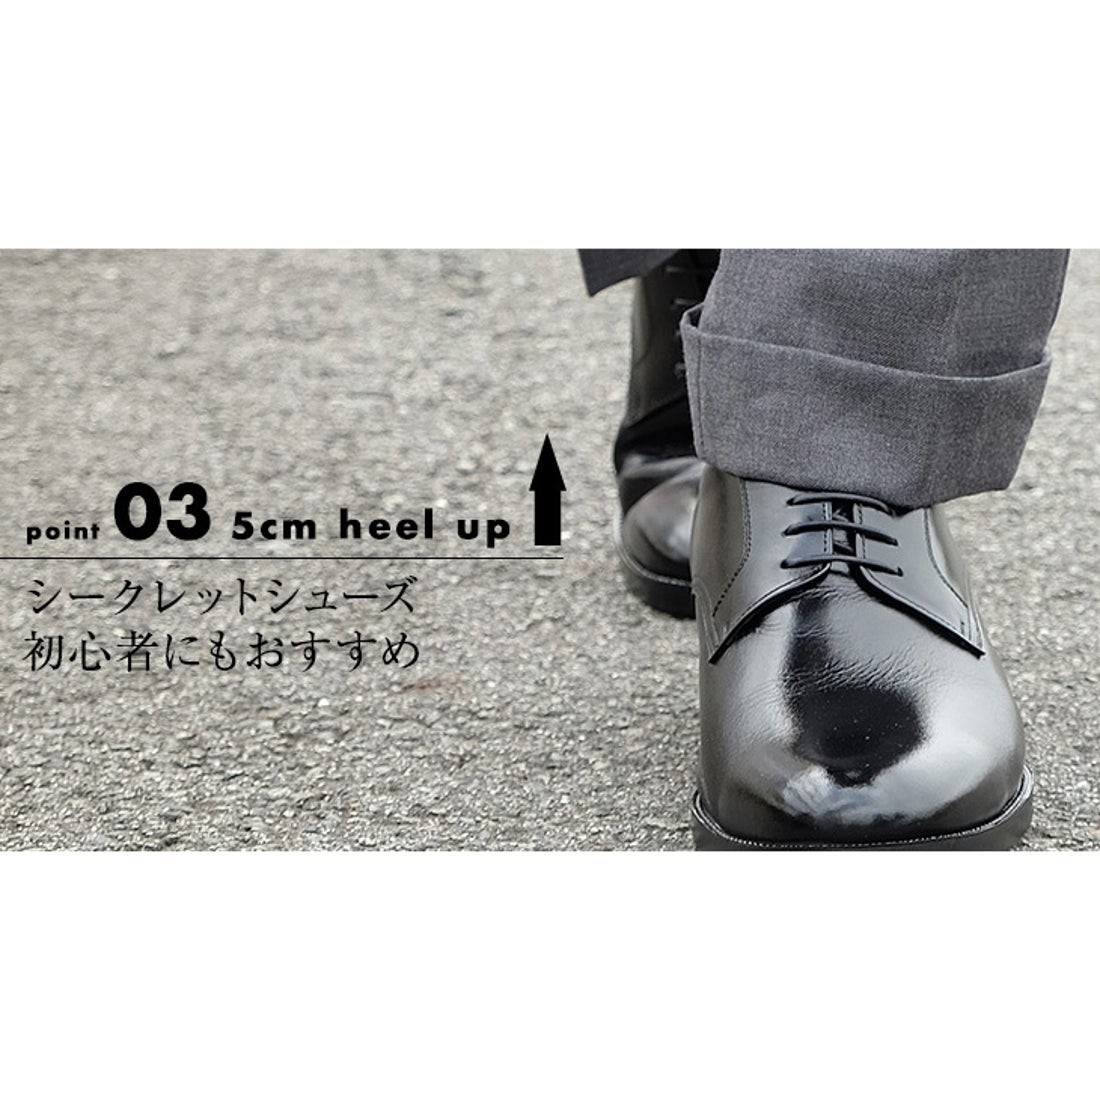 キタジマセイカ 北嶋製靴 【5cmアップ】牛革キッププレーンビジネス